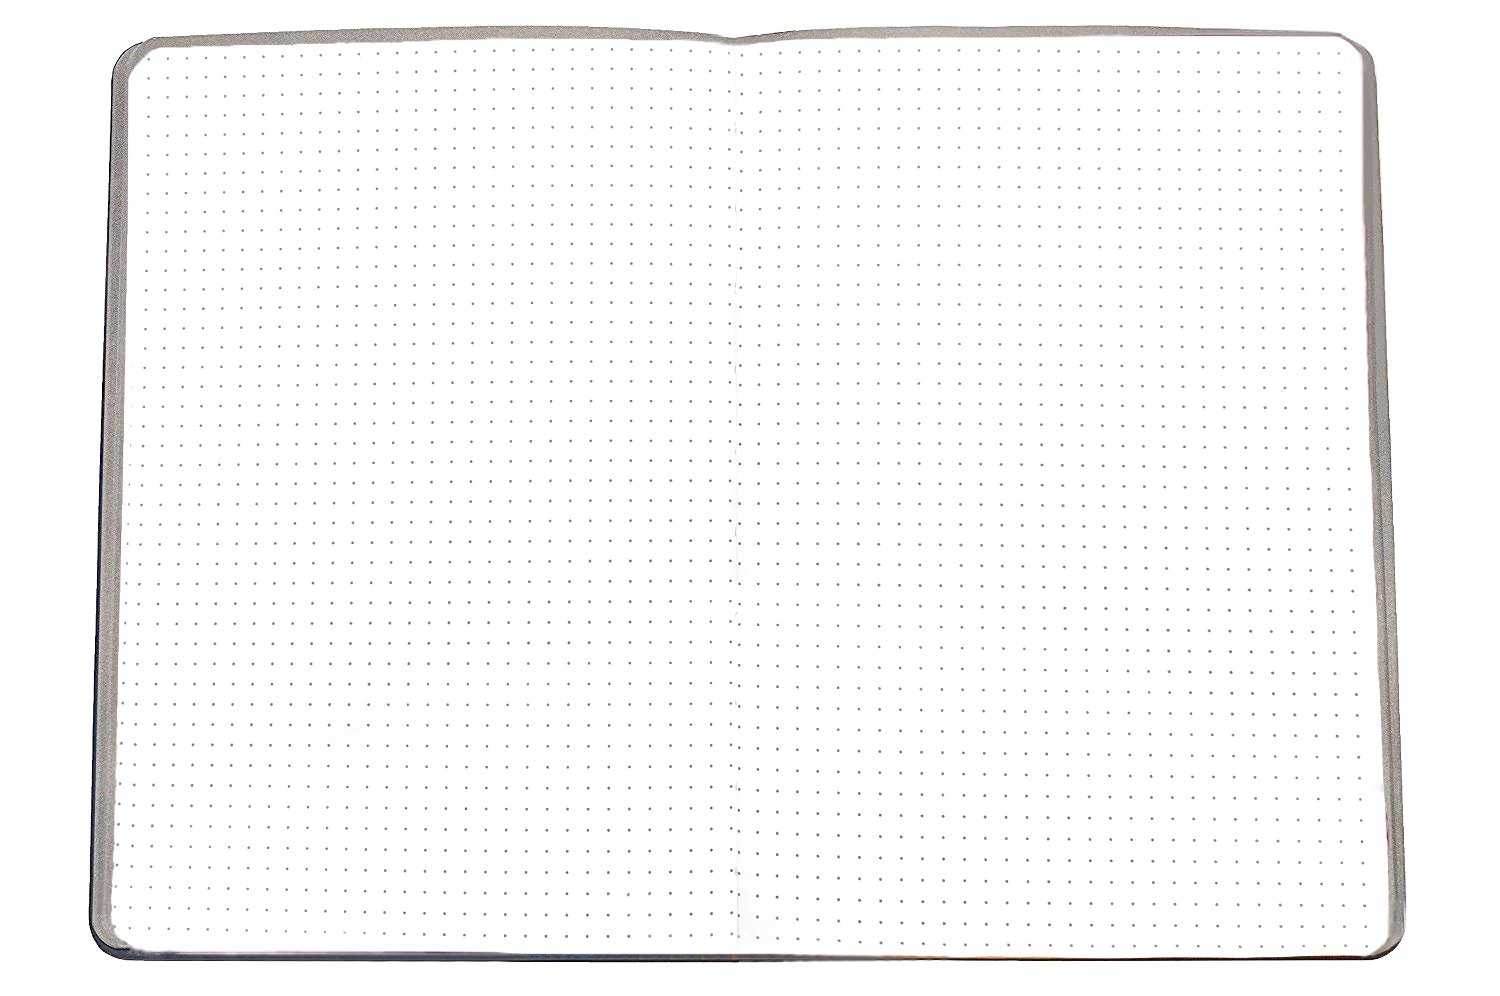 Bullet Journal Dot Grid Black Pages